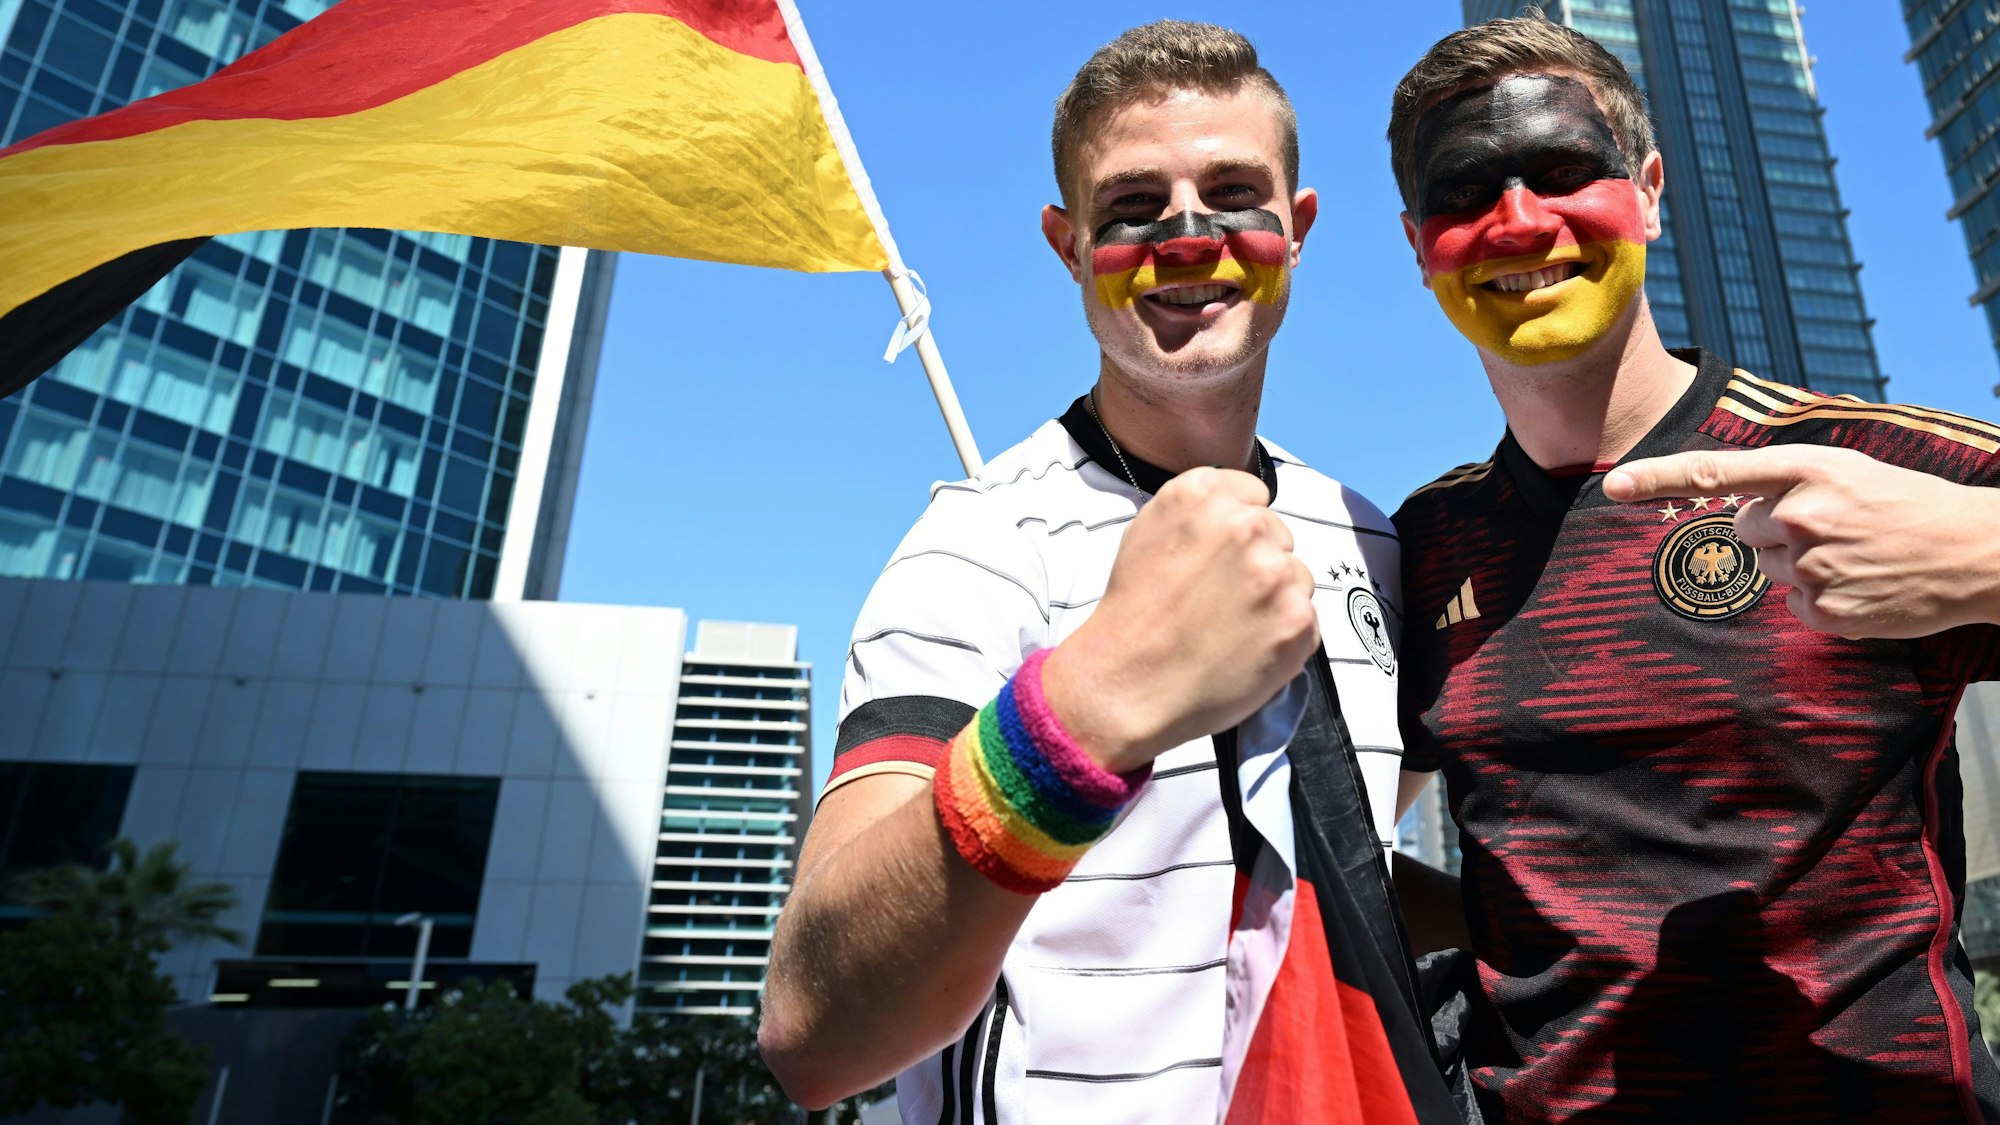 Bengt (l.) und Jan Kunkel stehen bei der Mobilen Fan-Botschaft des DFB in Doha. Bengt Kunkel zeigt das Regenbogen-Schweißband an seiner rechten Hand. Beide tragen Deutschland-Trikots.